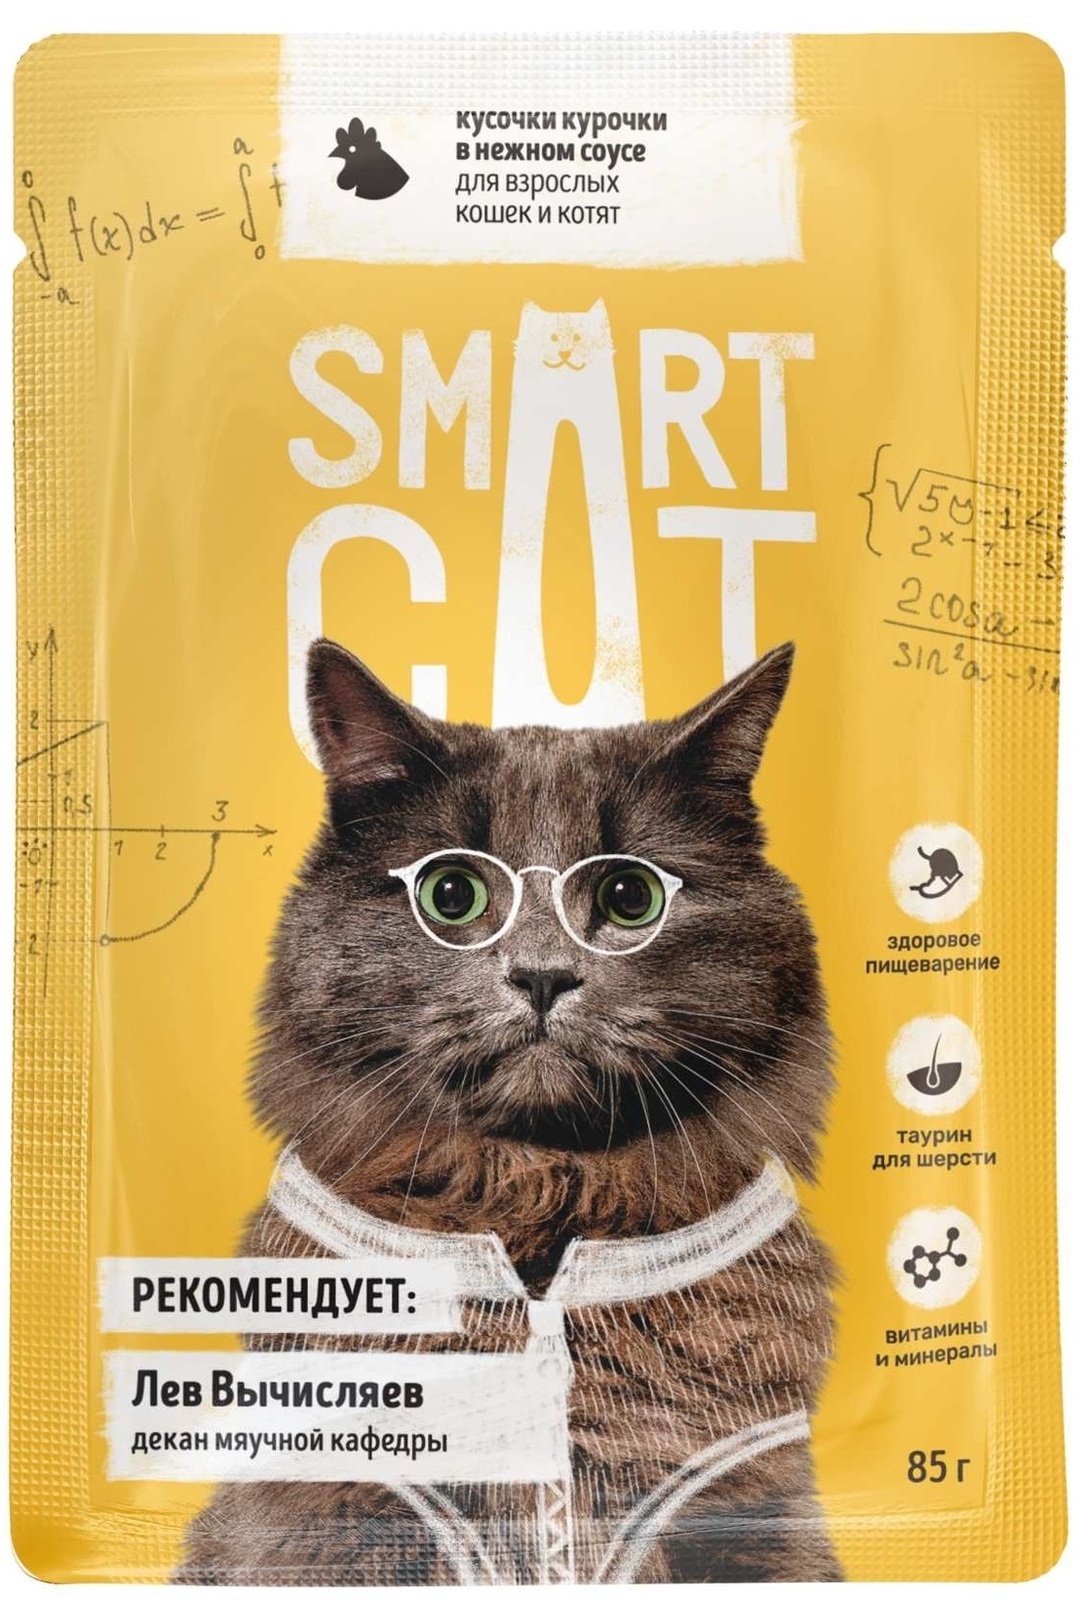 цена Smart Cat Smart Cat паучи для взрослых кошек и котят: кусочки курочки в нежном соусе (85 г)